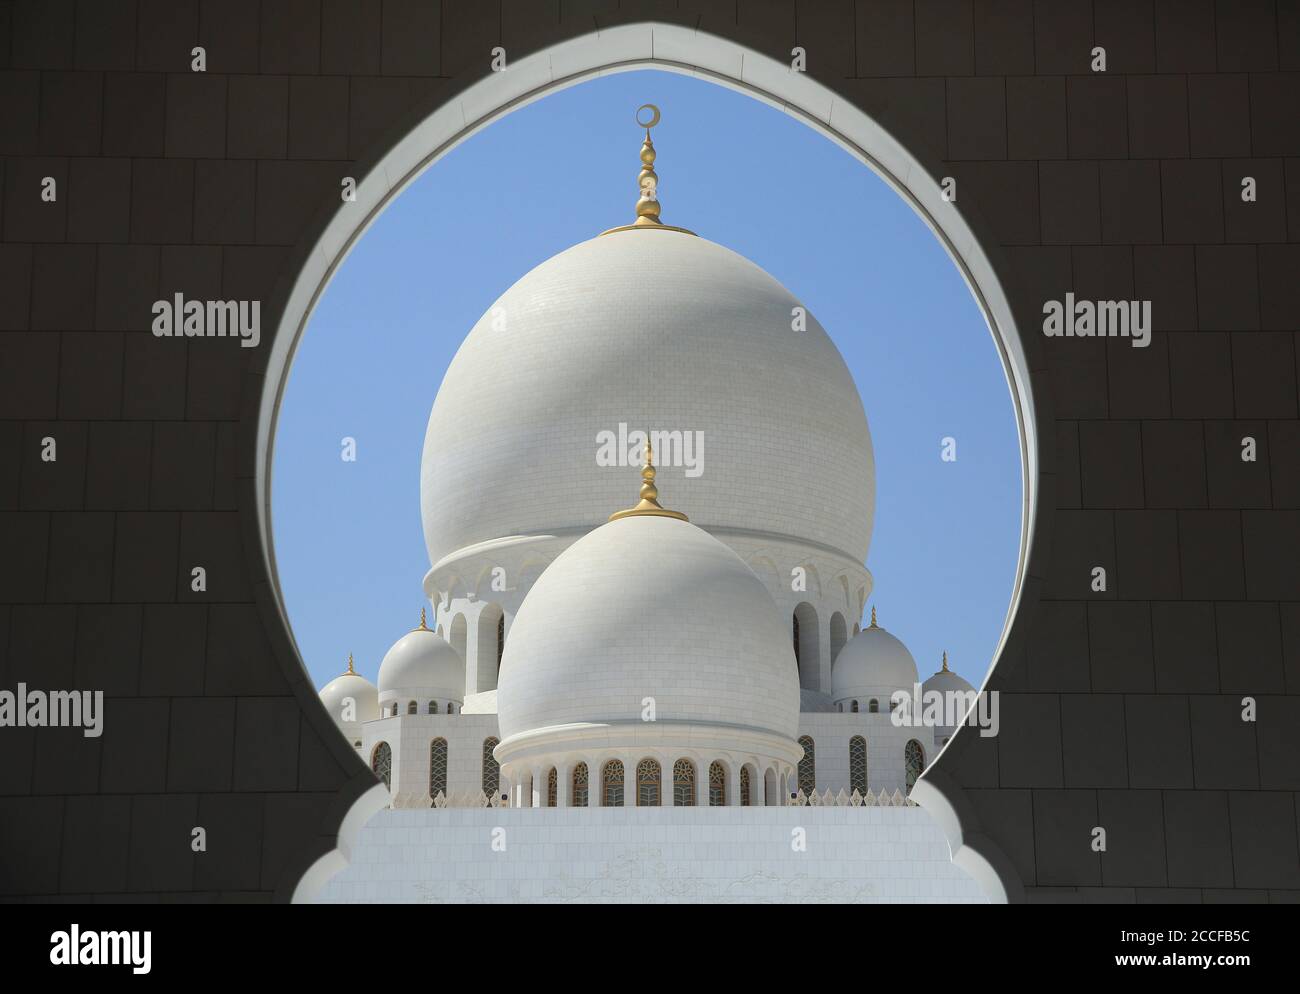 Sheikh Zayed Grand Mosque / Sheikh Zayed Grand Mosque in Abu Dhabi, UAE Stock Photo